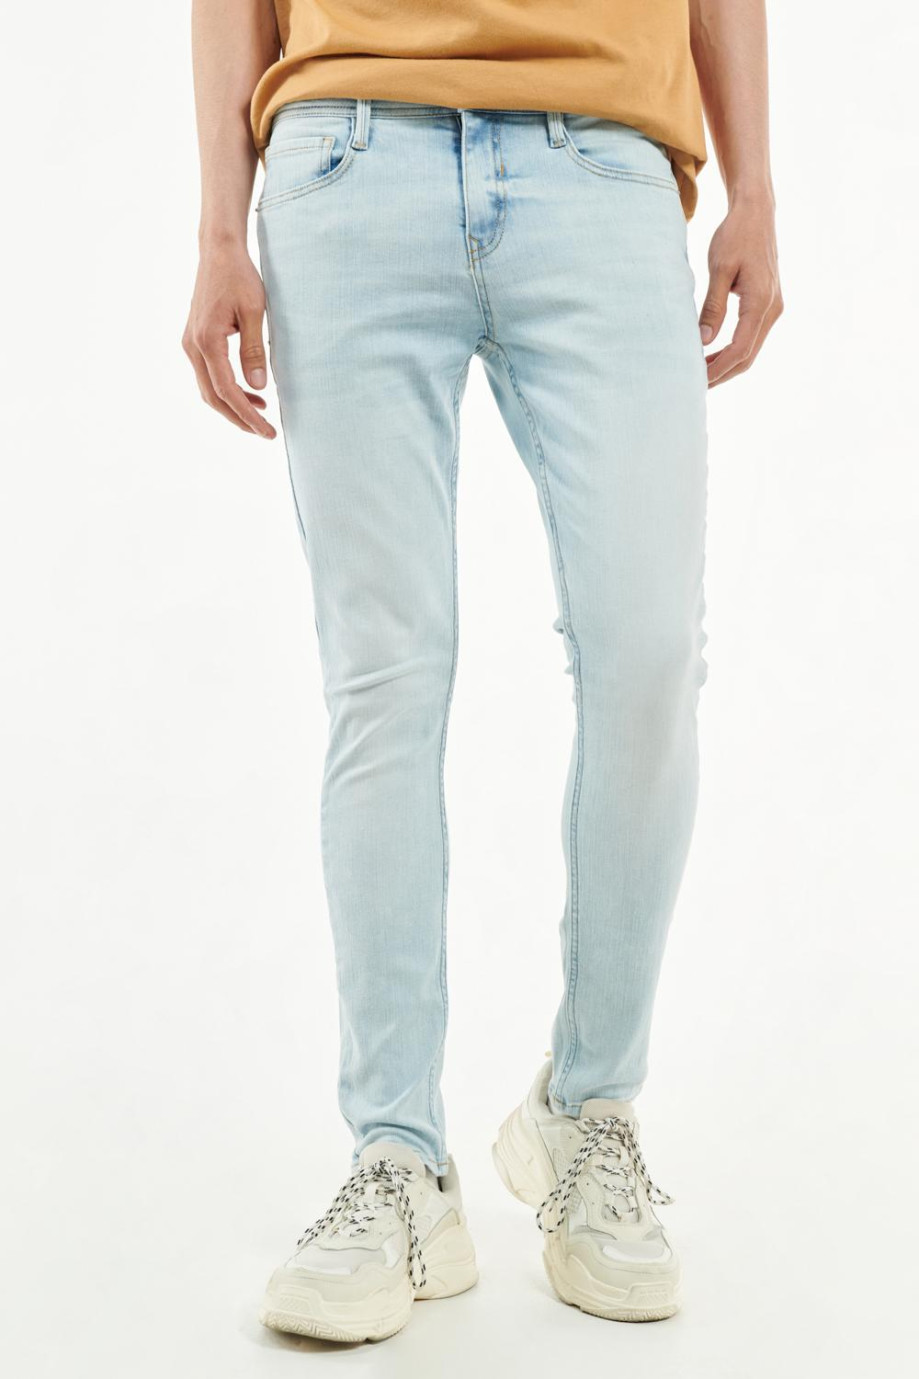 Jean súper skinny azul claro con ajuste muy ceñido y bolsillos funcionales